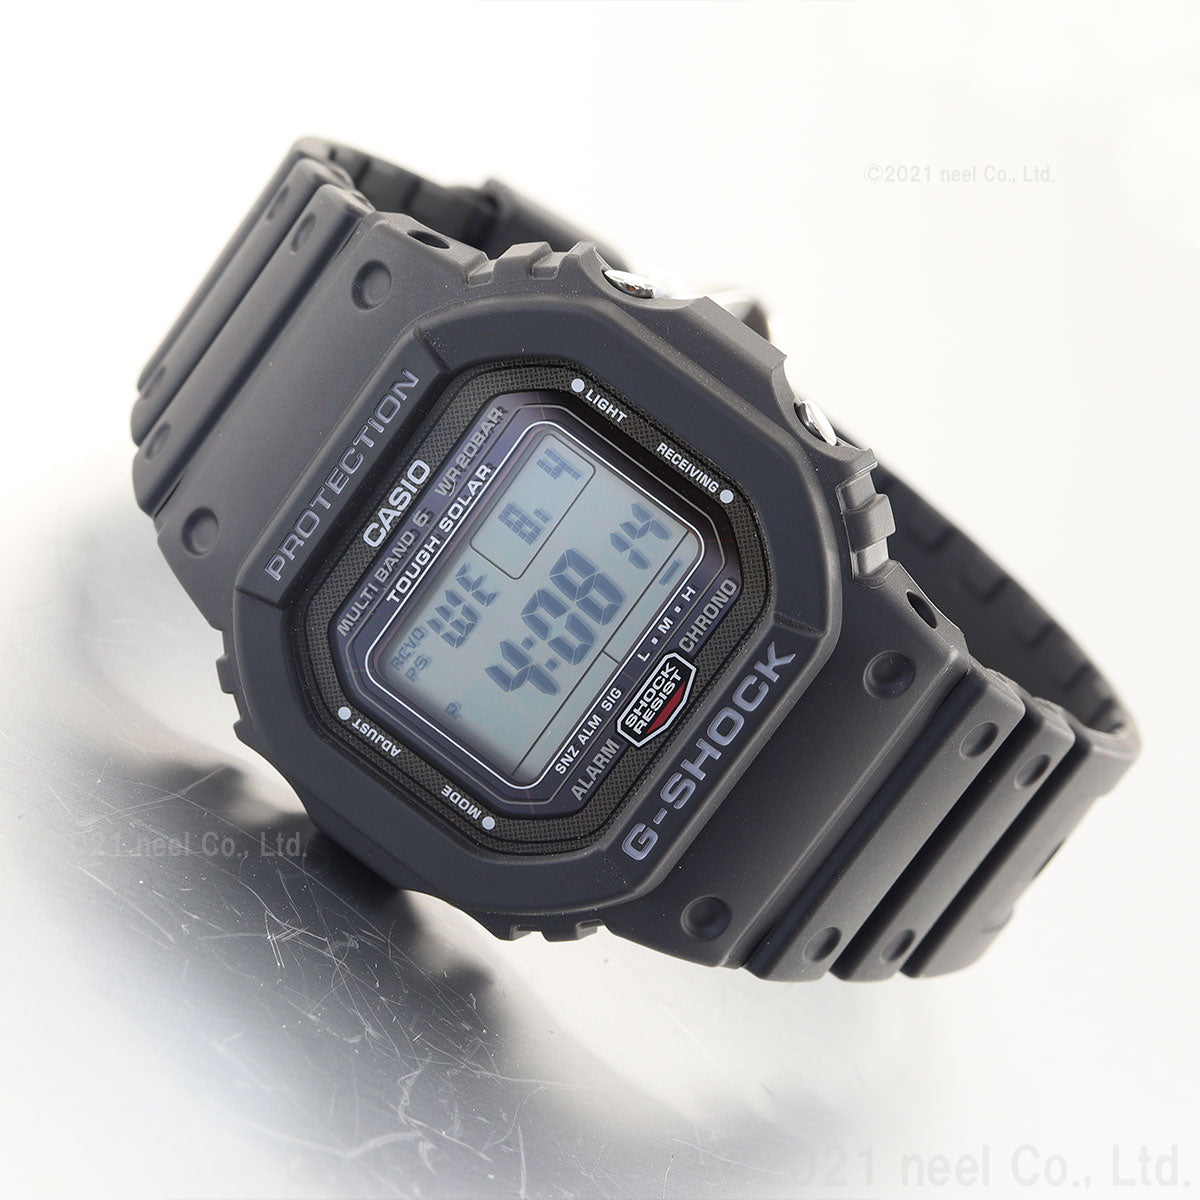 先着特価!新品未使用!G-SHOCK 電波ソーラー腕時計GW-5000U-1JF